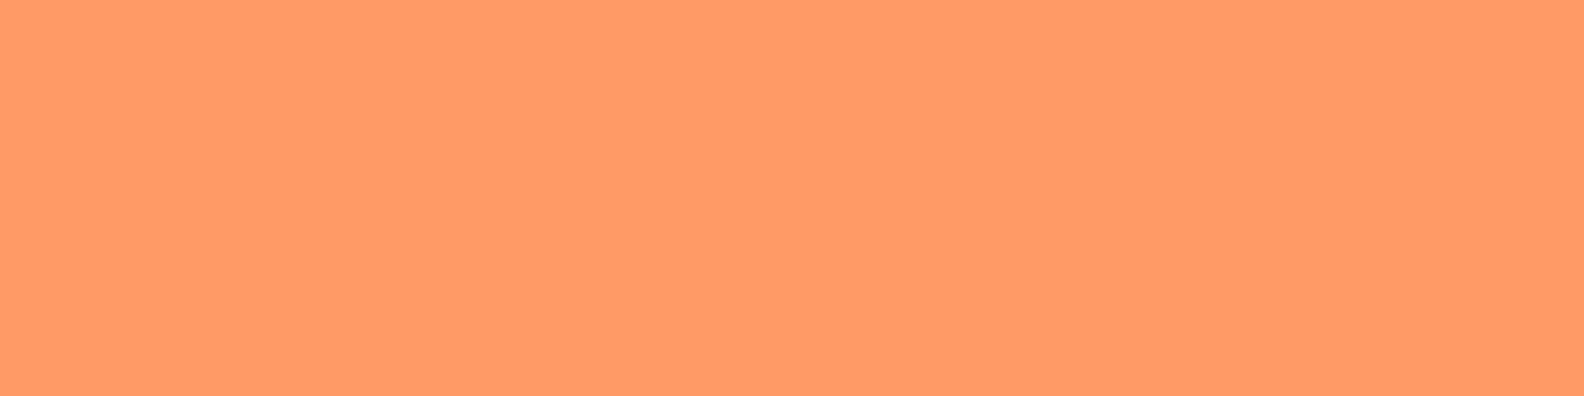 1584x396 Pink-orange Solid Color Background